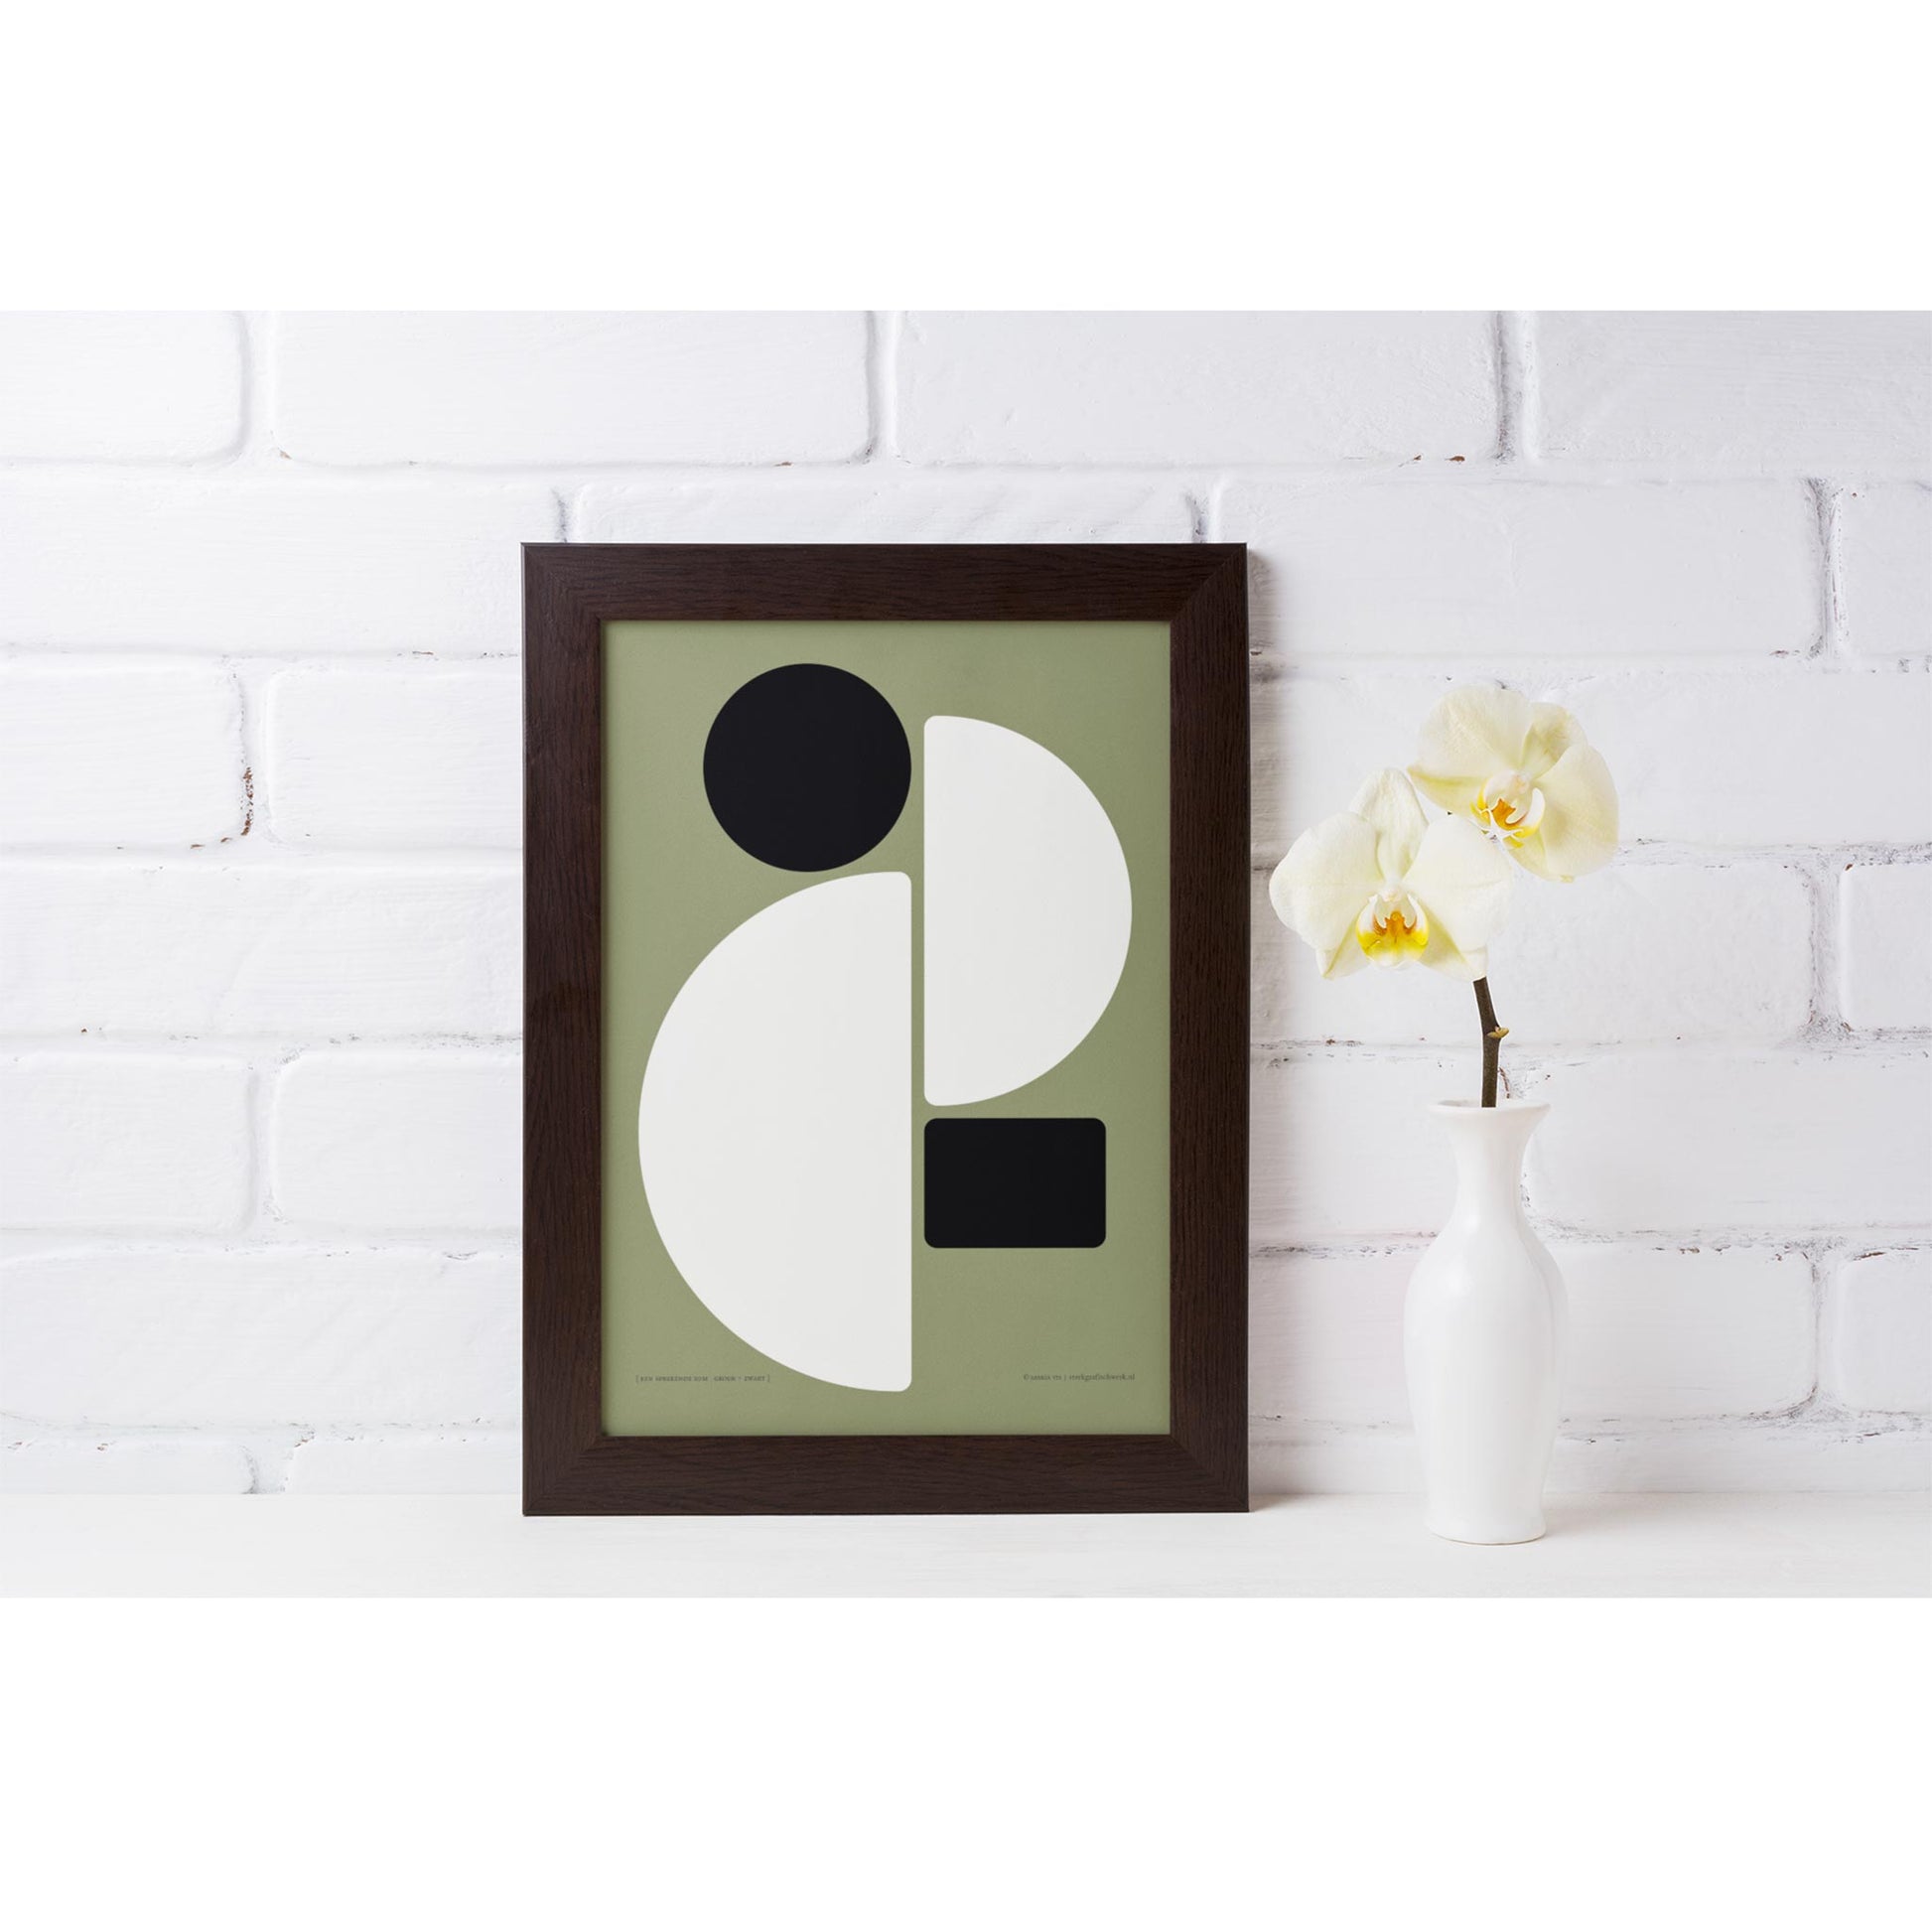 Productafbeelding poster "een sprekende som groen+zwart" 3de impressie ingelijst staand op een plank tegen een wand